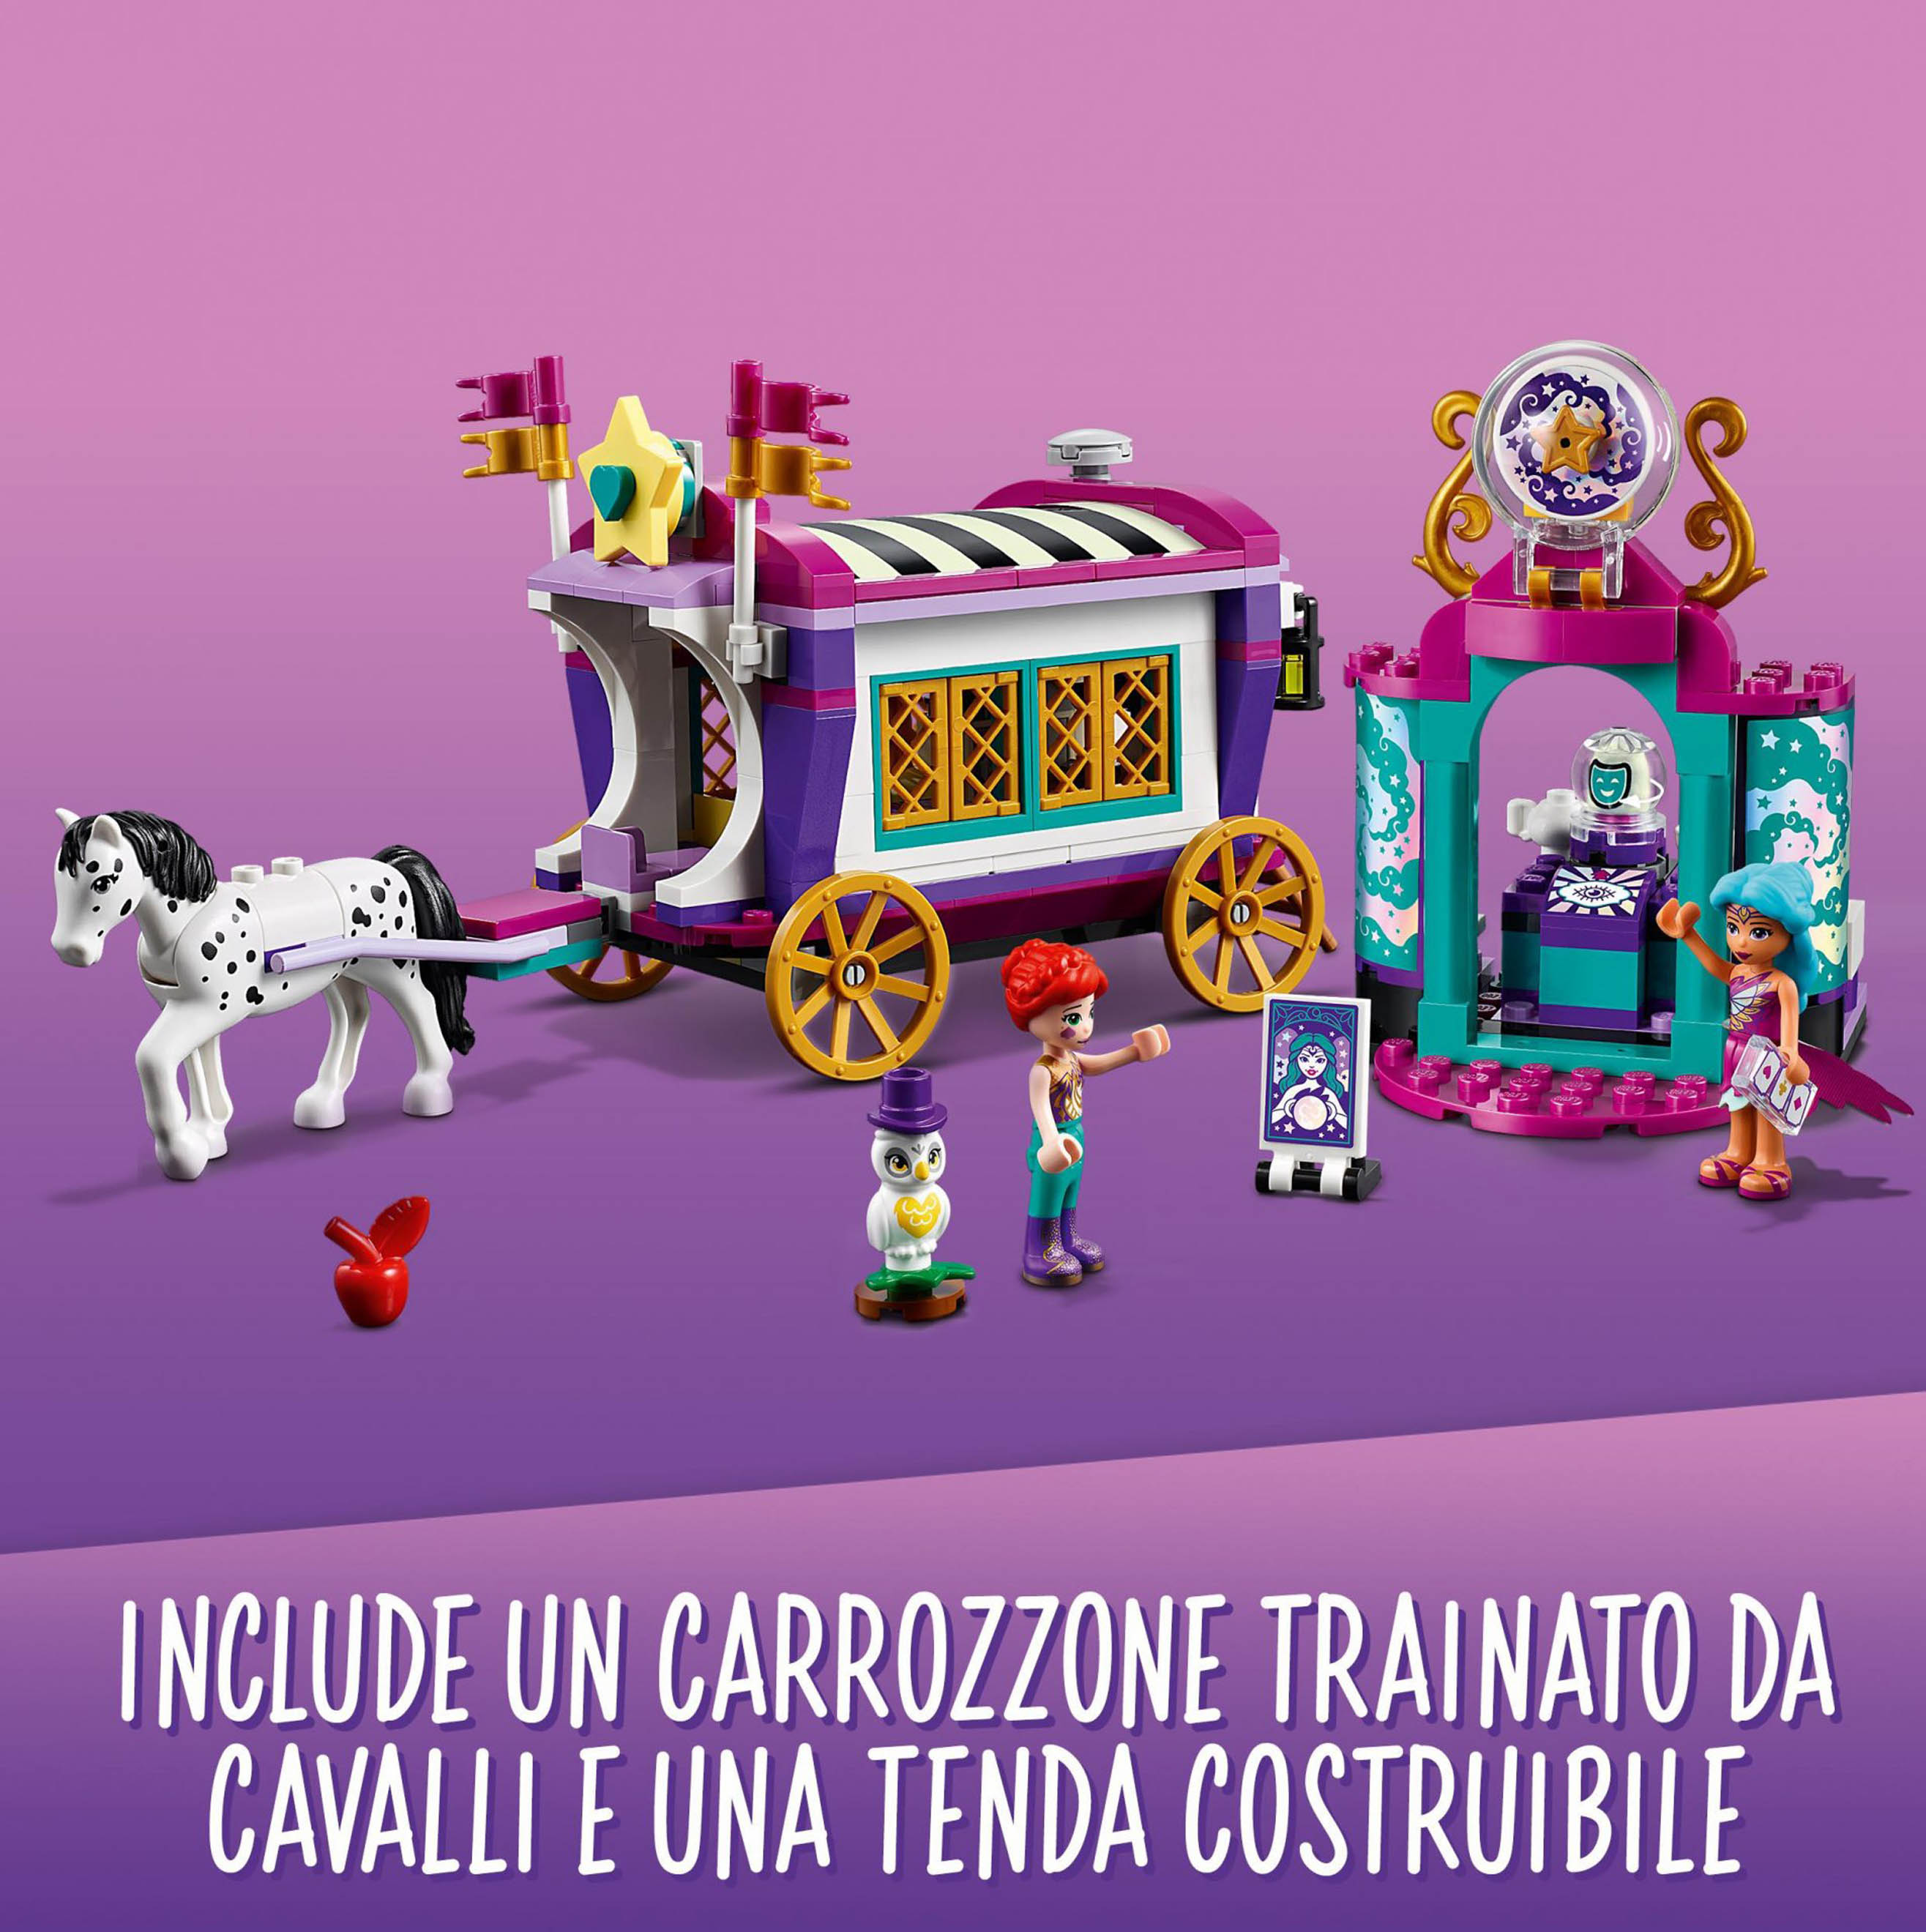 LEGO Friends Il Caravan Magico, Set di Costruzioni per Bambini, Parco Giochi con 41688, , large